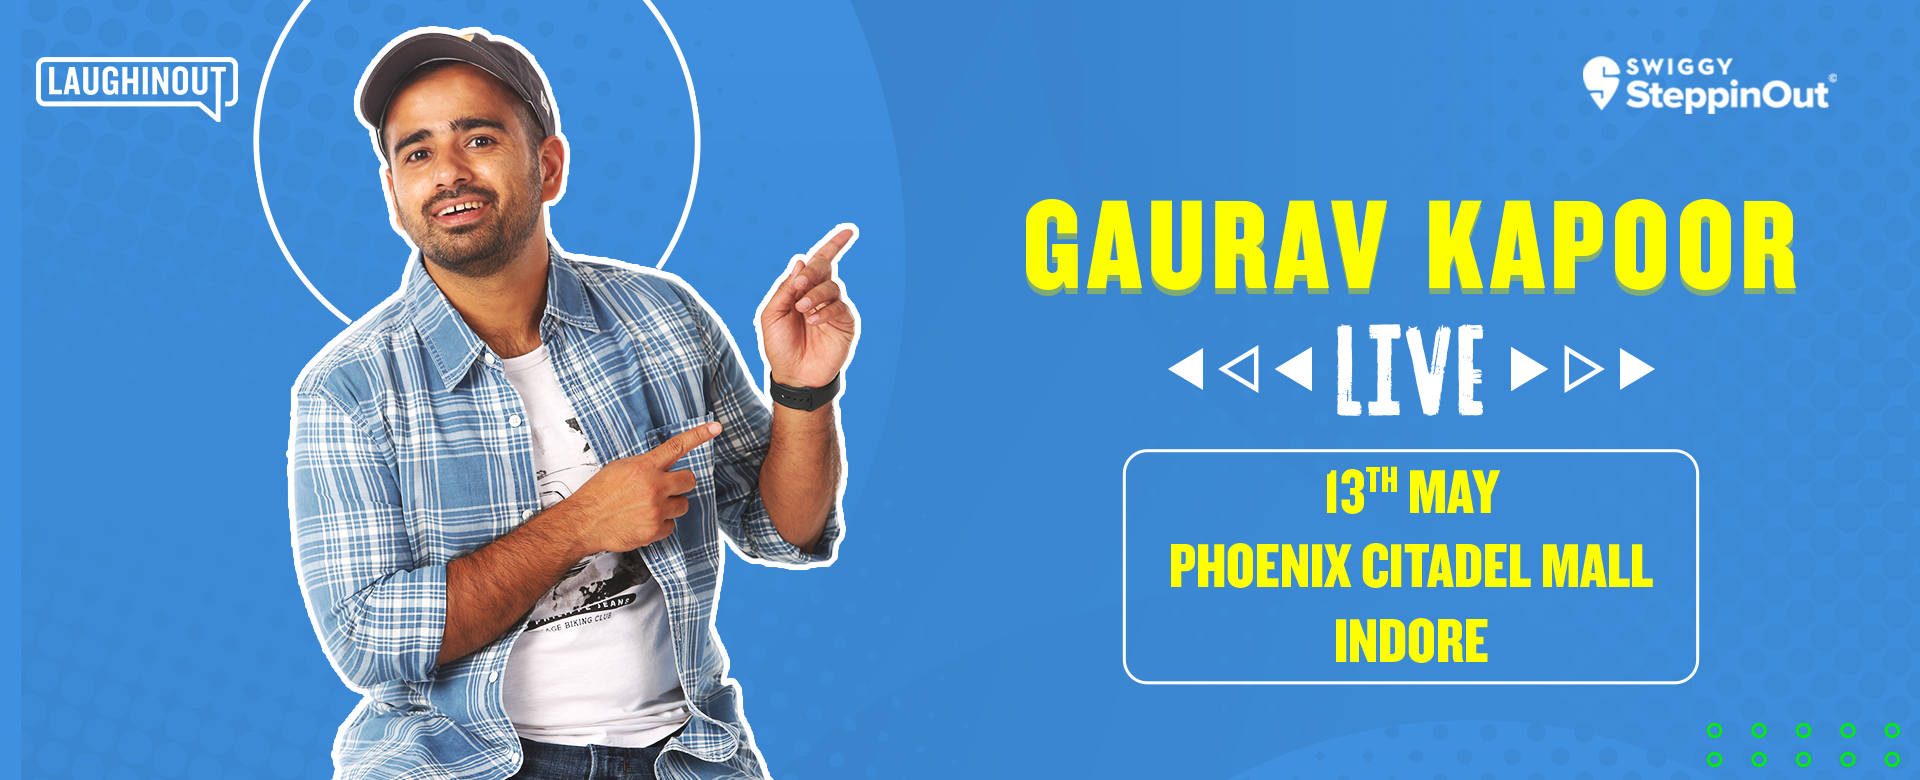 Gaurav-Kapoor-PhoenixCitadel-Indore